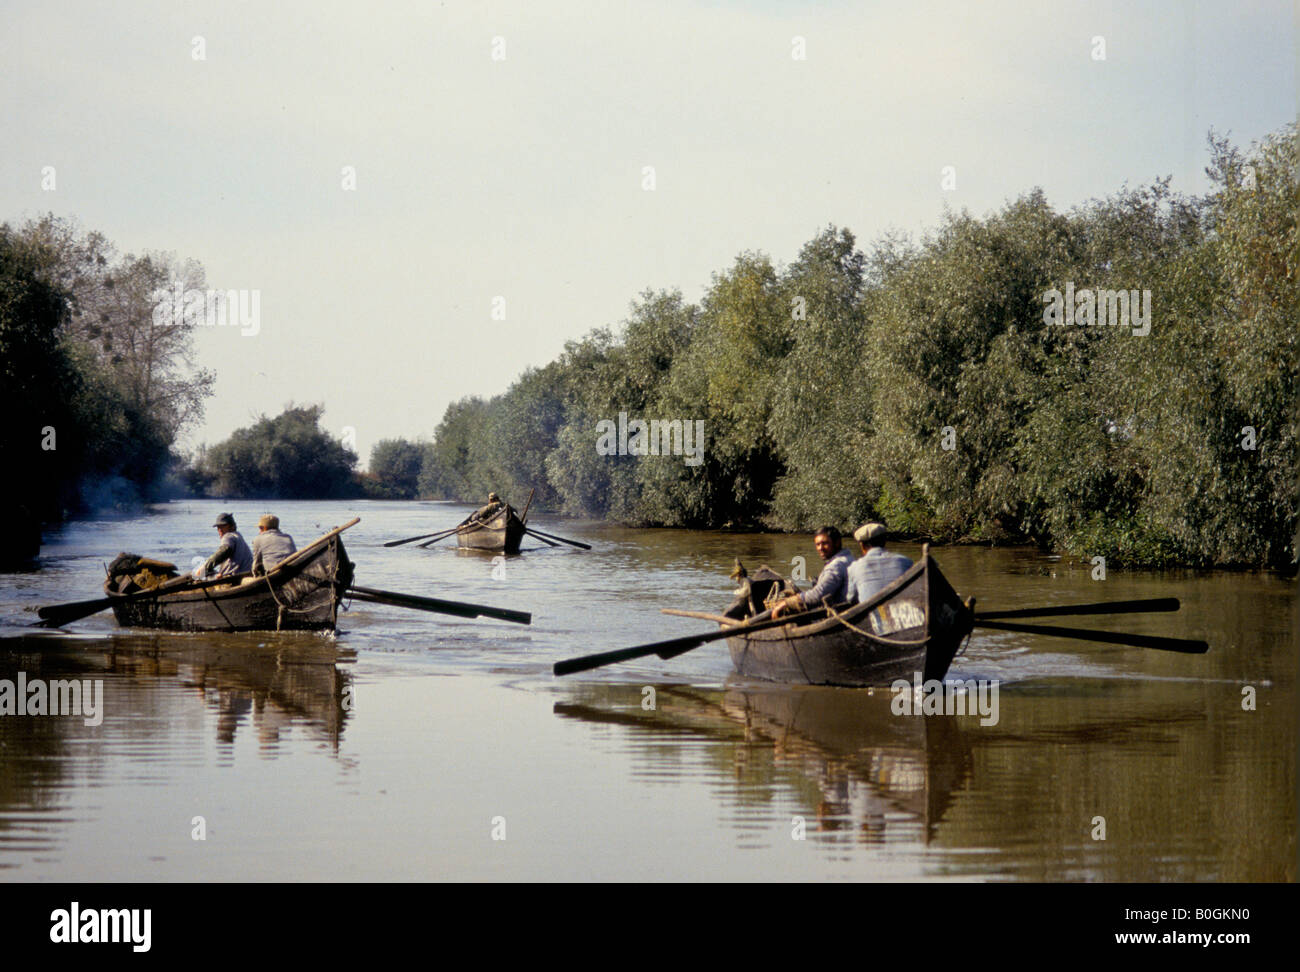 Aviron bateaux pêcheurs traditionnels en bois sur une rivière, St Gheorghe, Roumanie. Banque D'Images